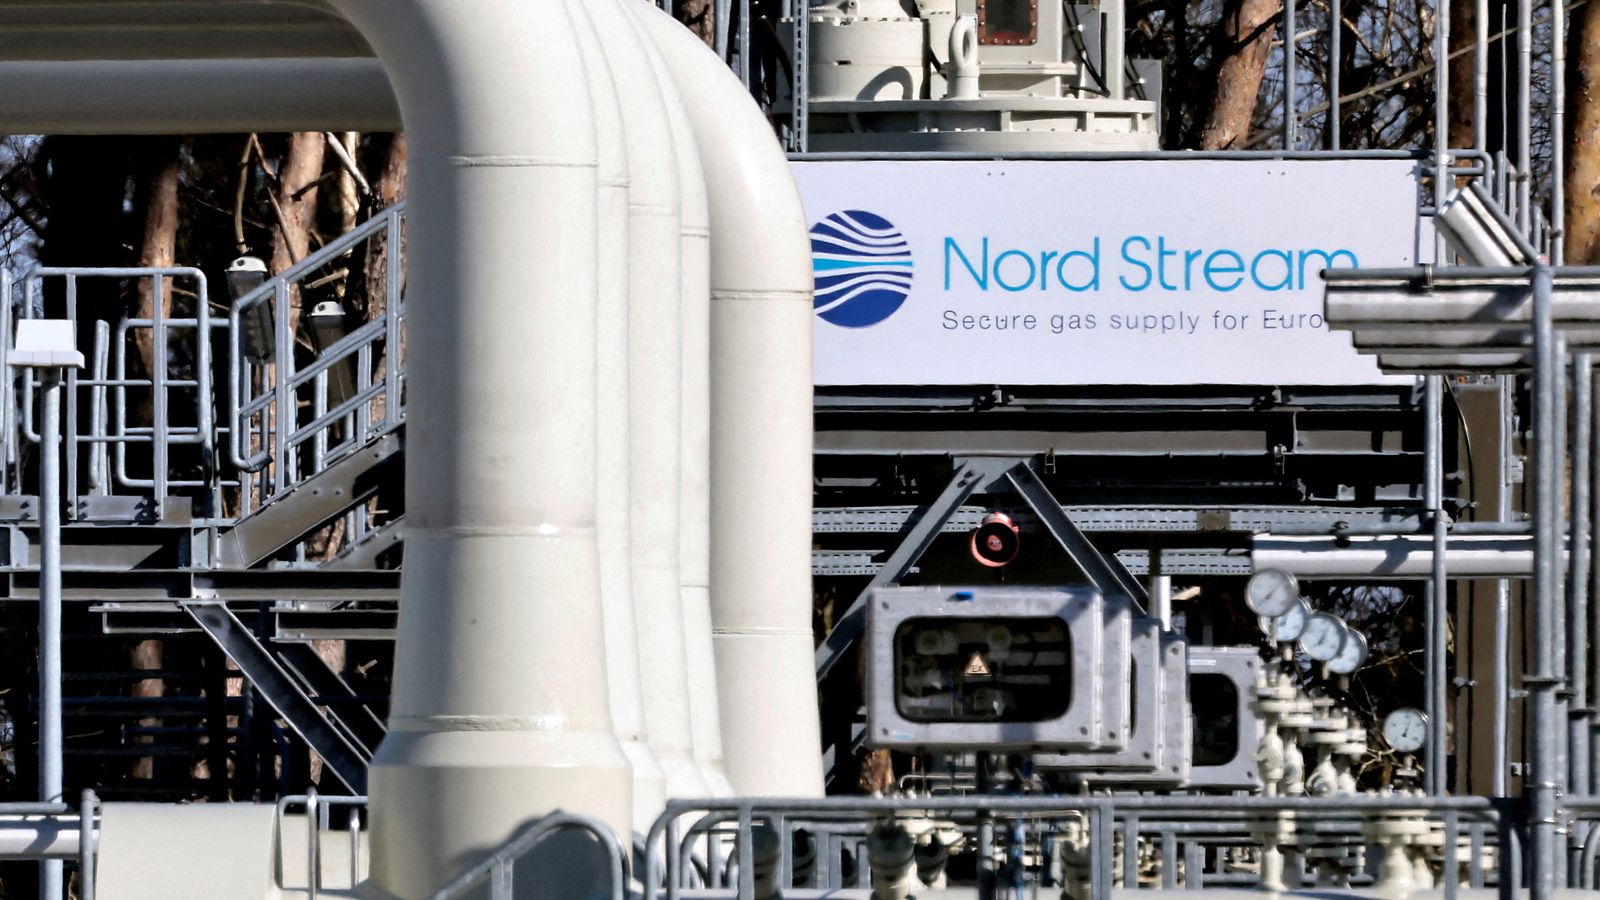 Nejistota ohledně plynovodu Nord Stream nechává Německo a Evropu zírat na sud nespokojenosti a stagnace |  světové zprávy